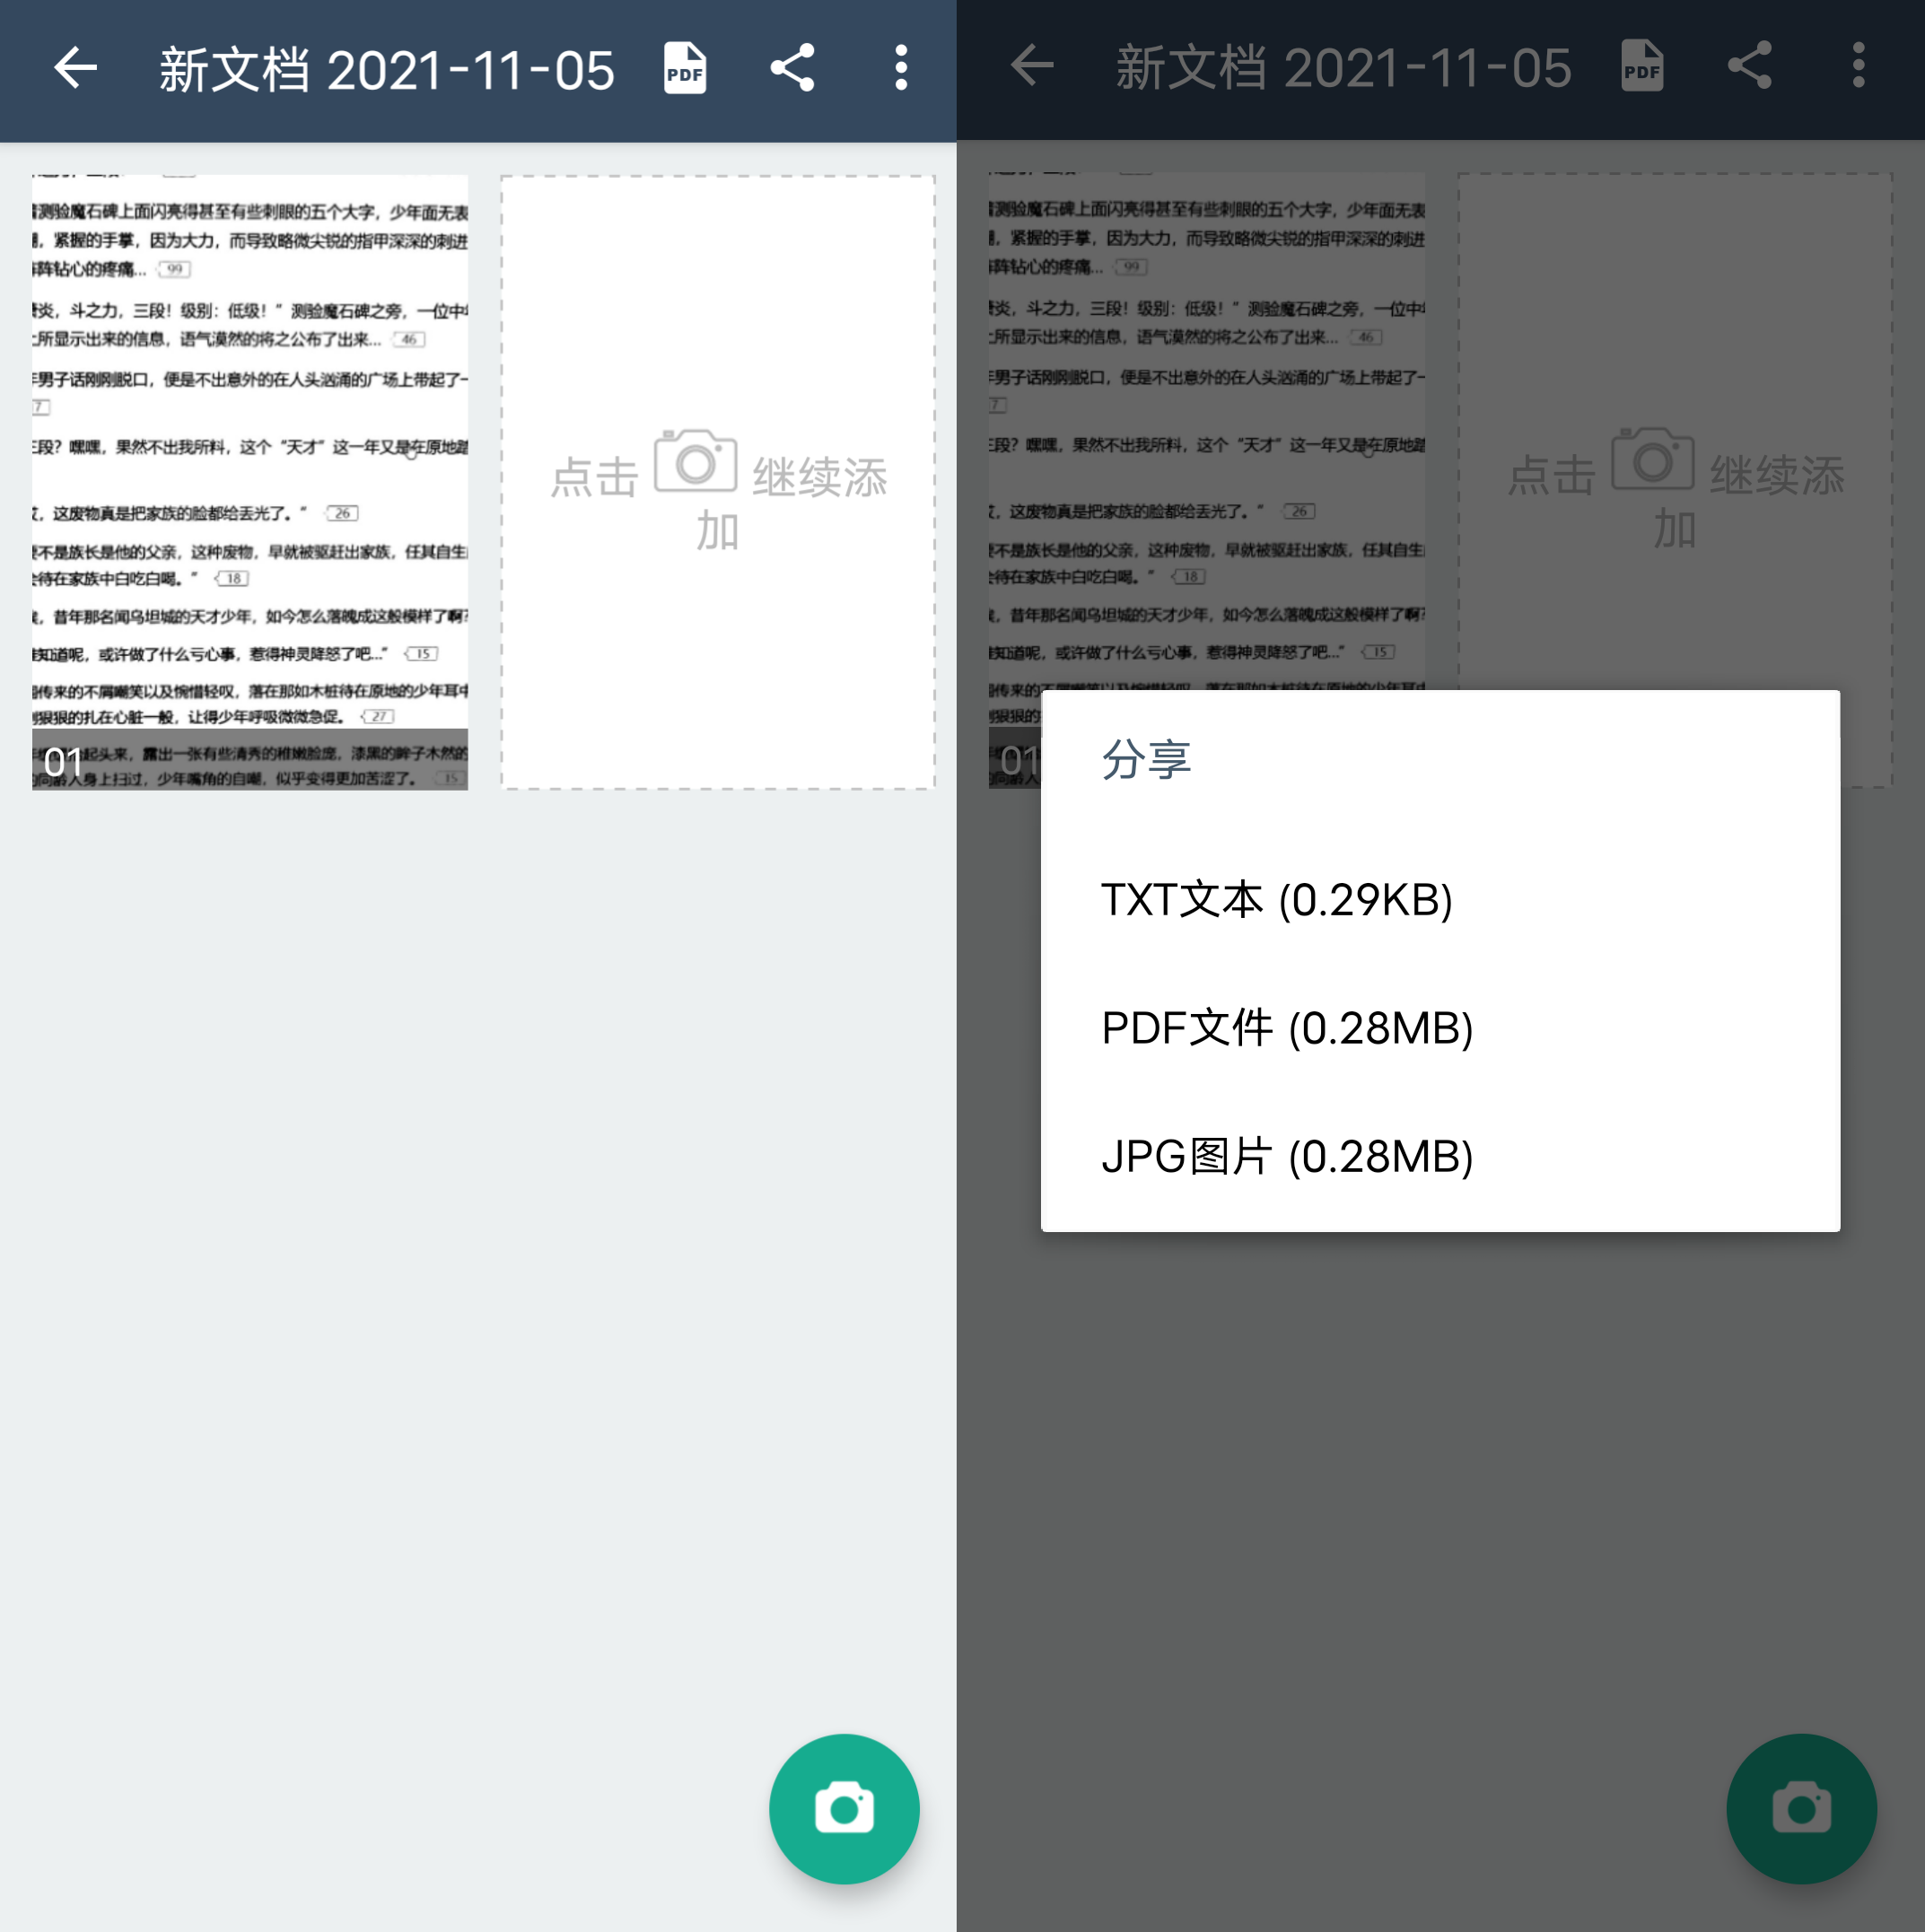 Android 扫描全能王 v6.8.6 高级版